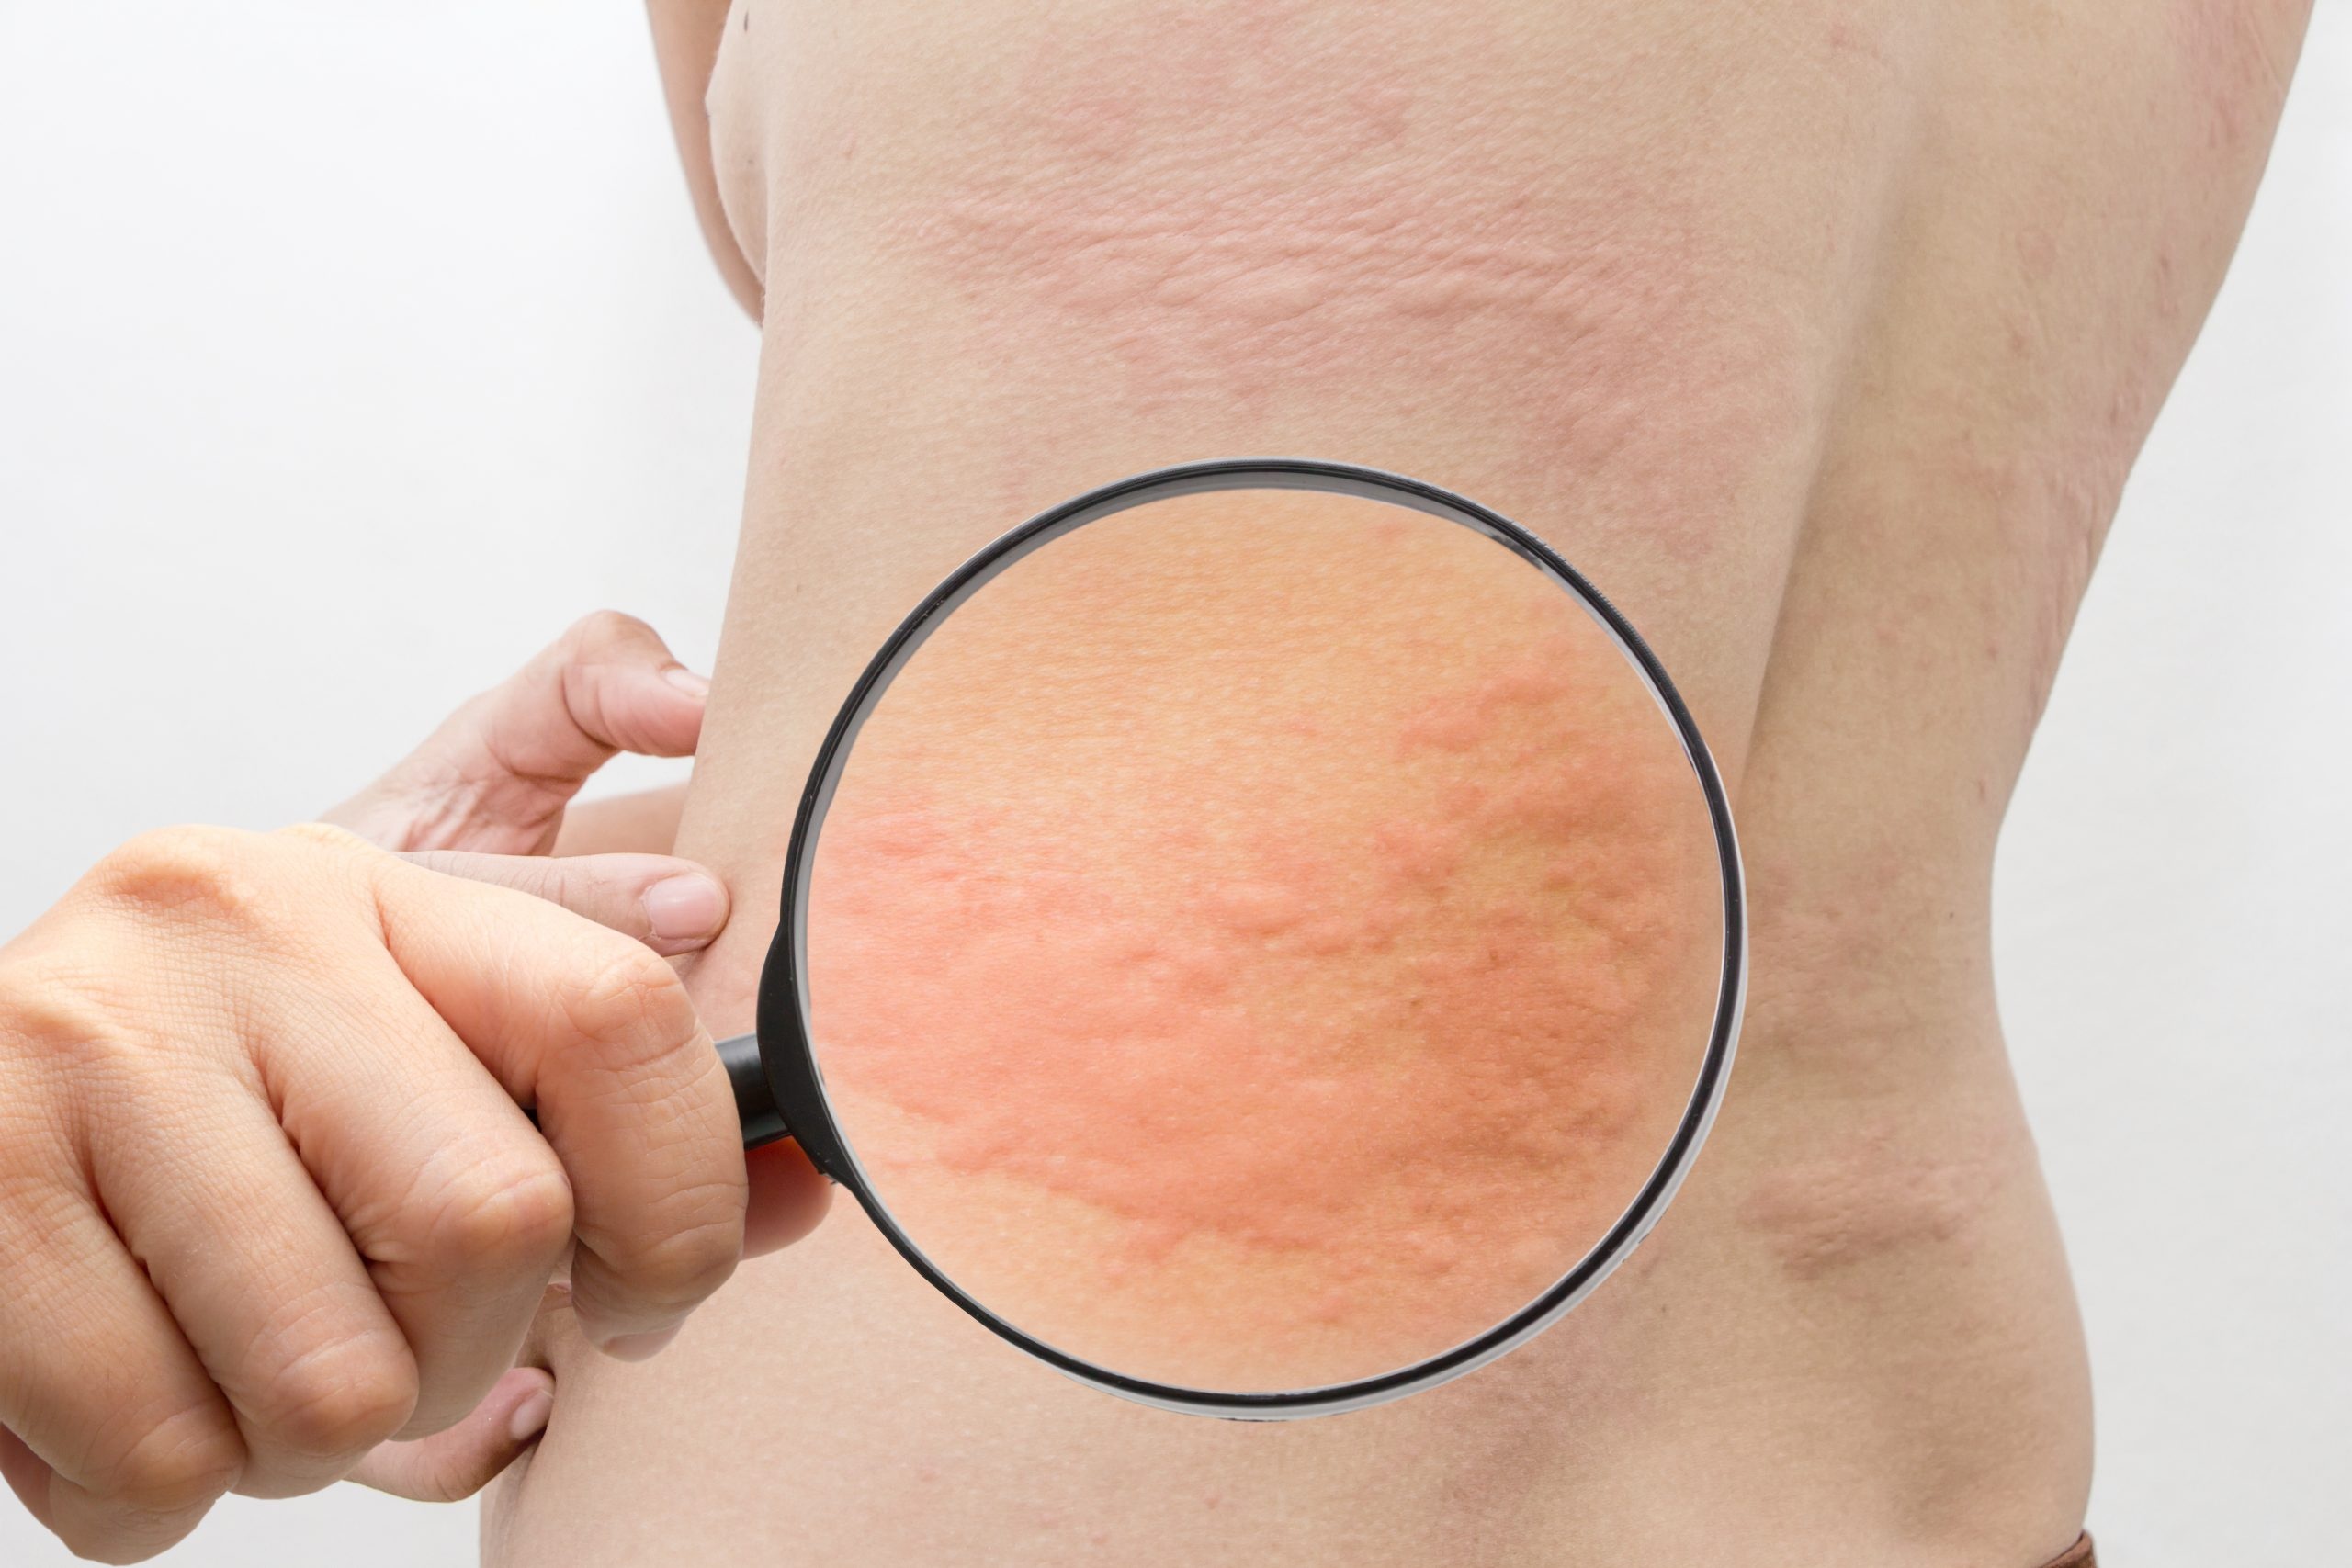 Аллергия на коже: лечение красных пятен и других проявлений